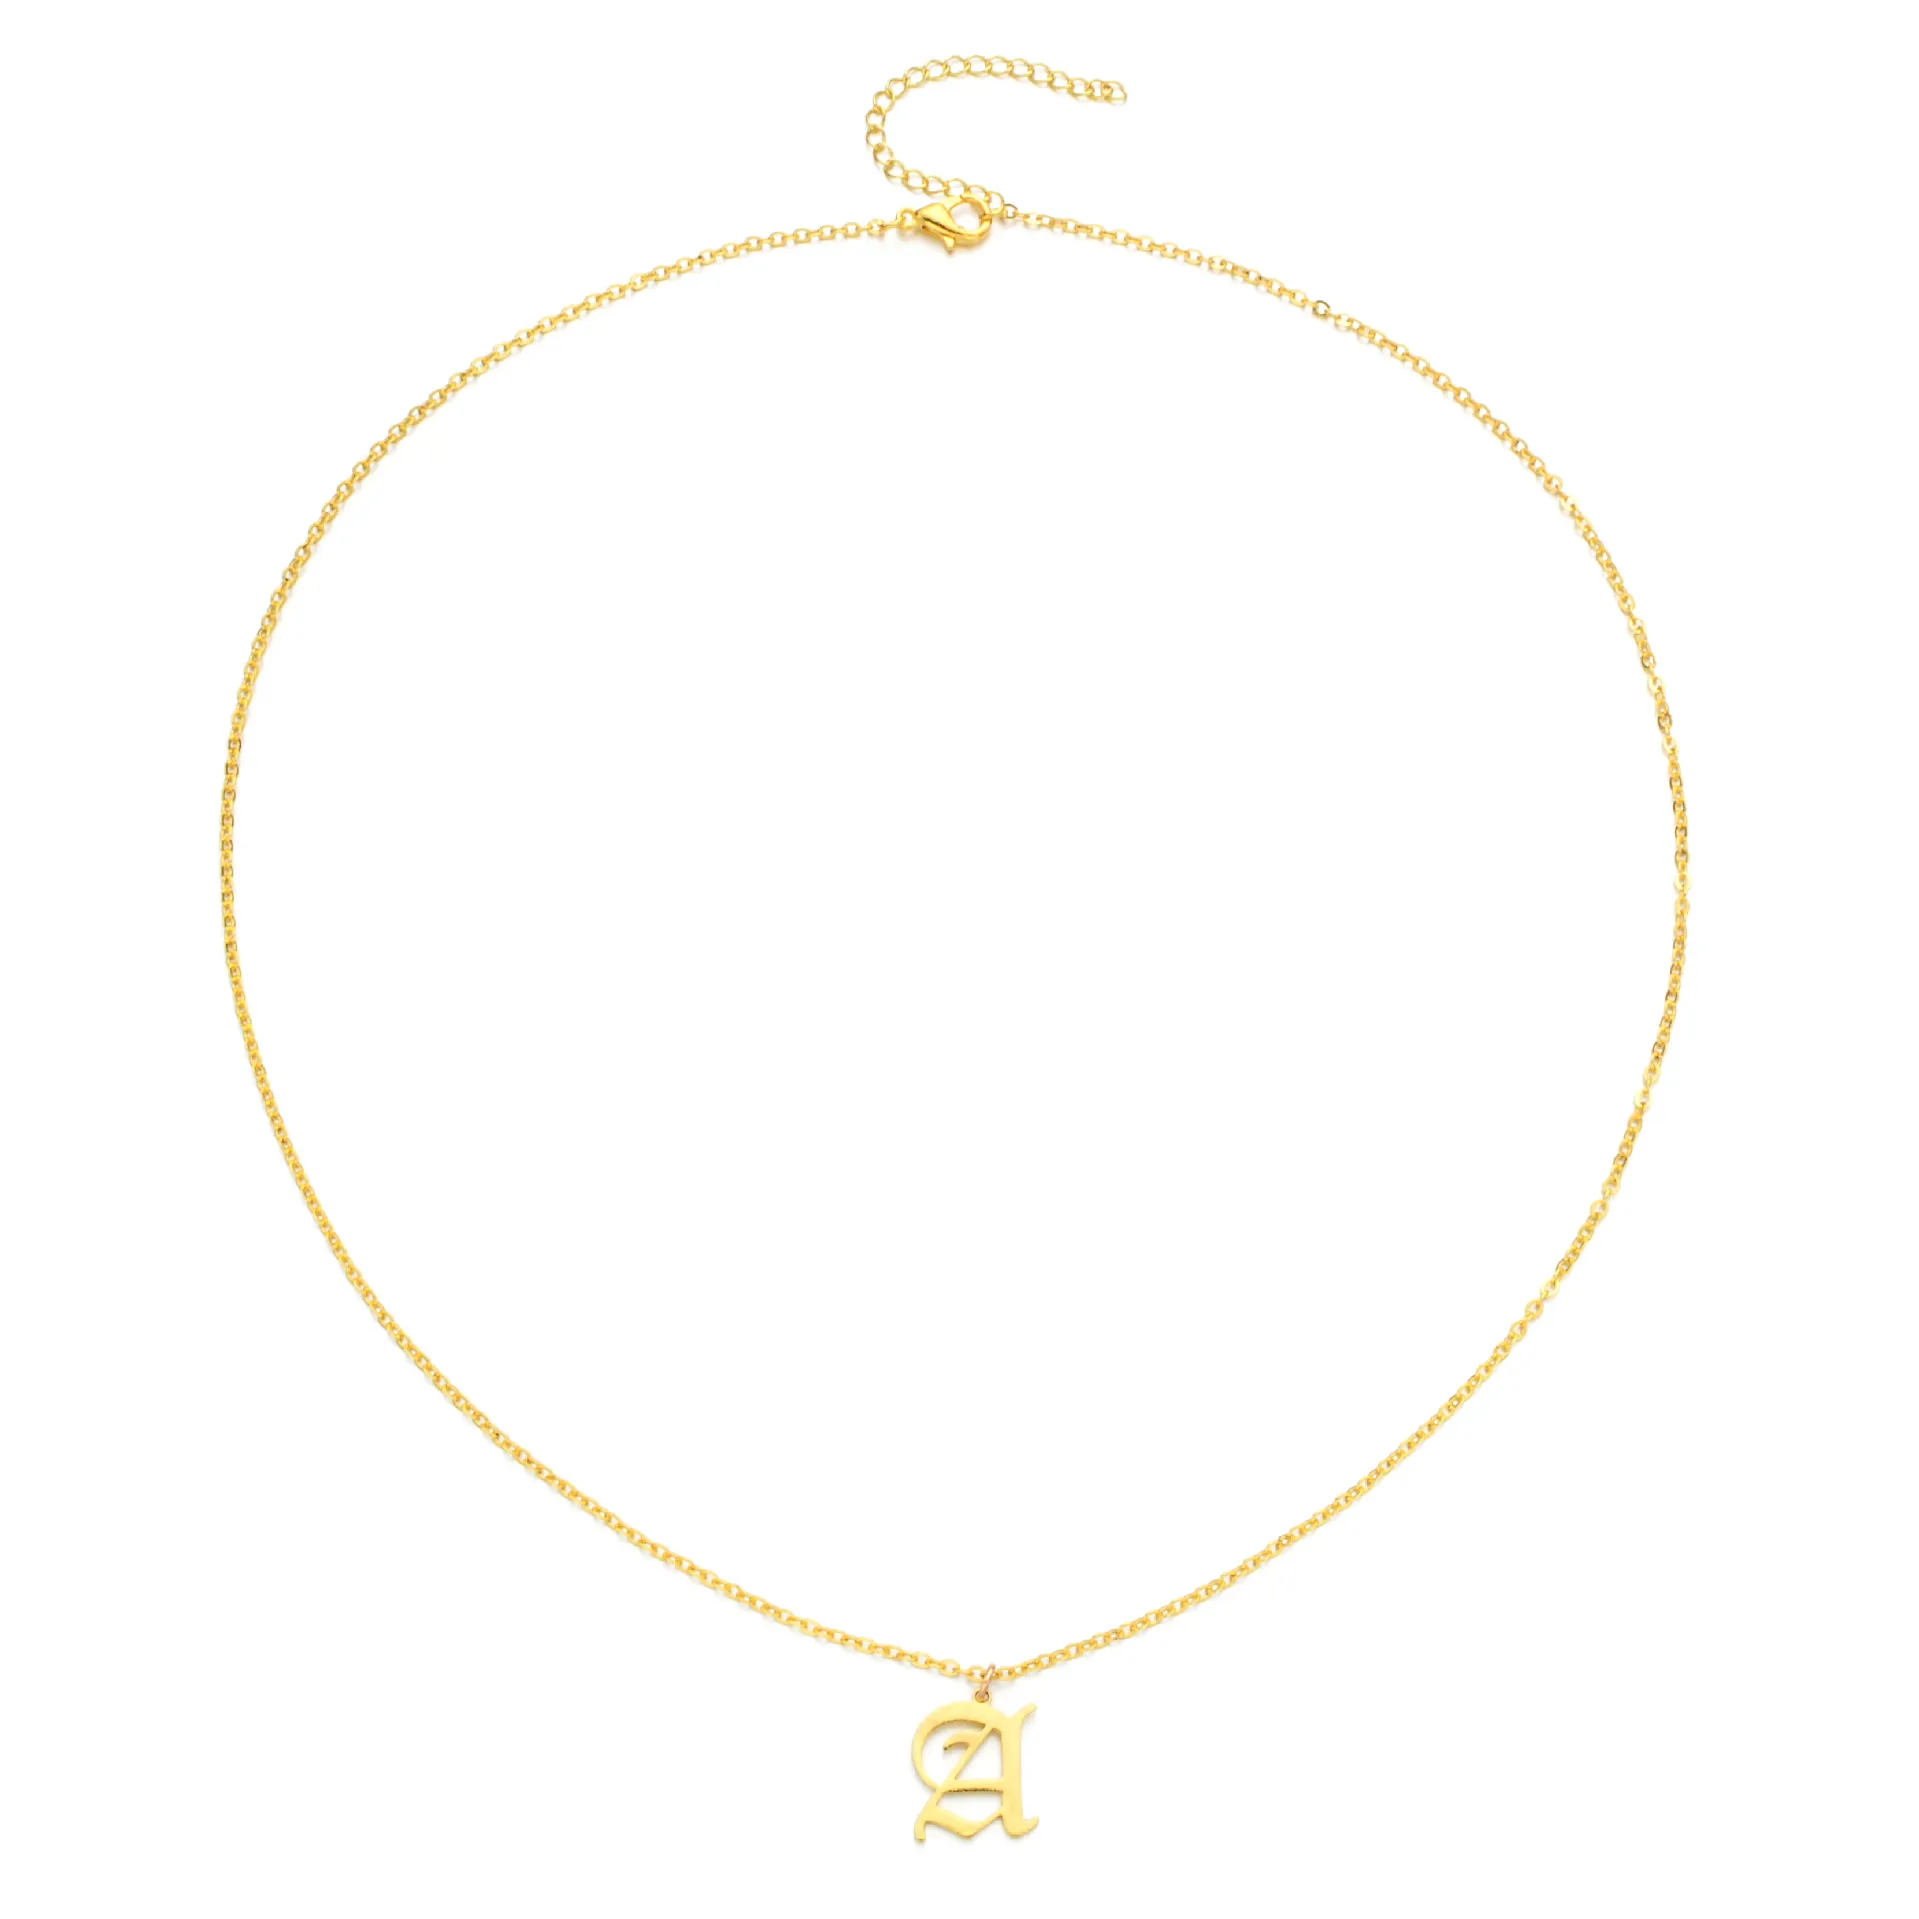 Vintage 26 Colar de carta em ingl￪s Cadeias de ouro prateado colares pendentes iniciais para mulheres j￳ias de moda Will e Sandy Gift